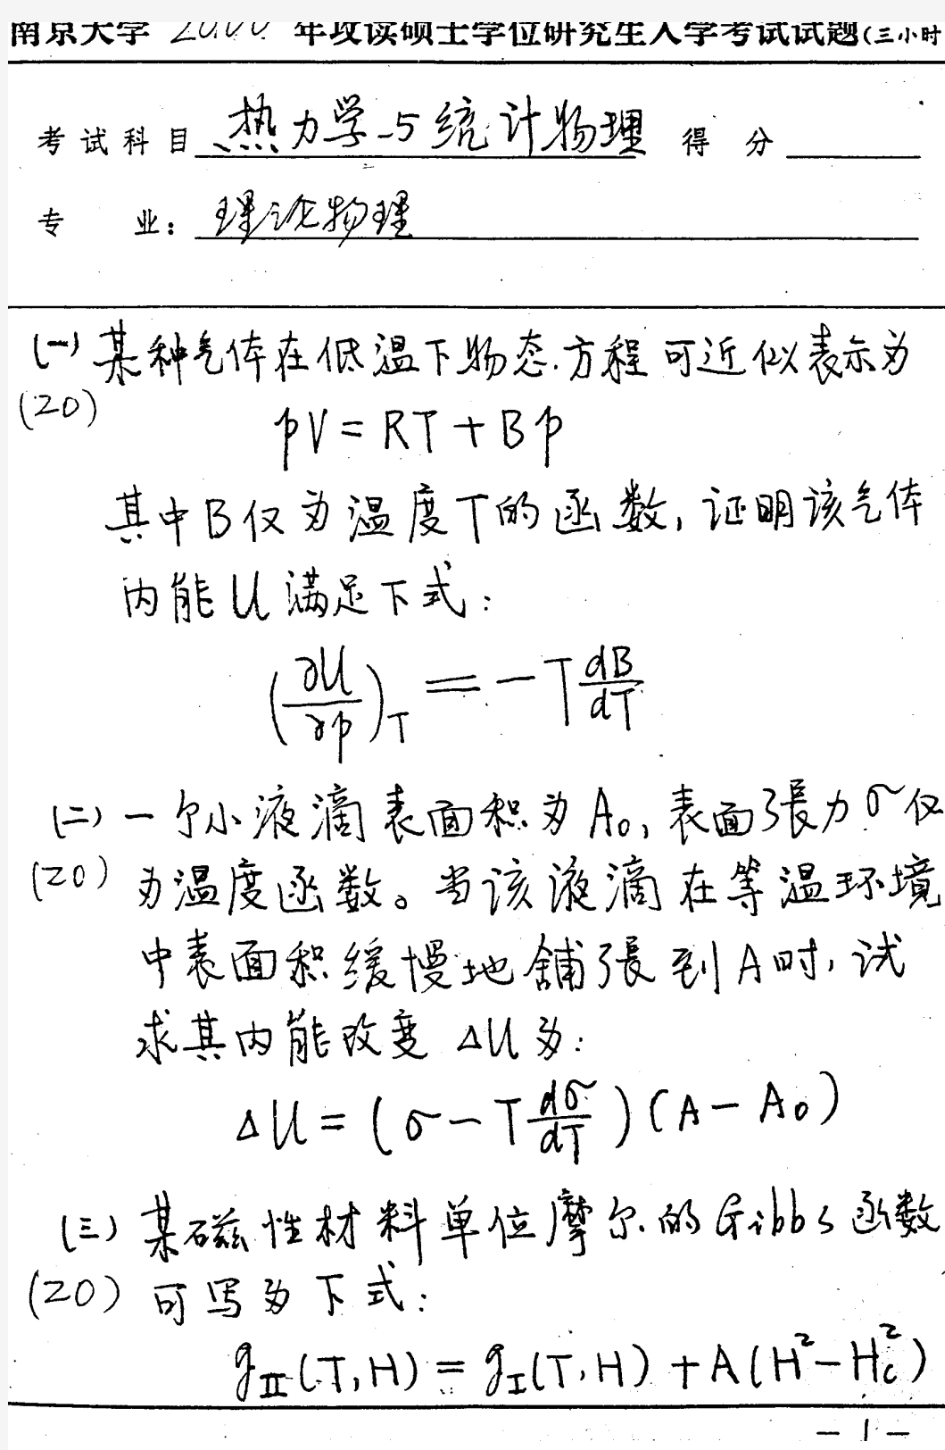 南京大学南大 2000年热力学与统计物理 考研真题及答案解析